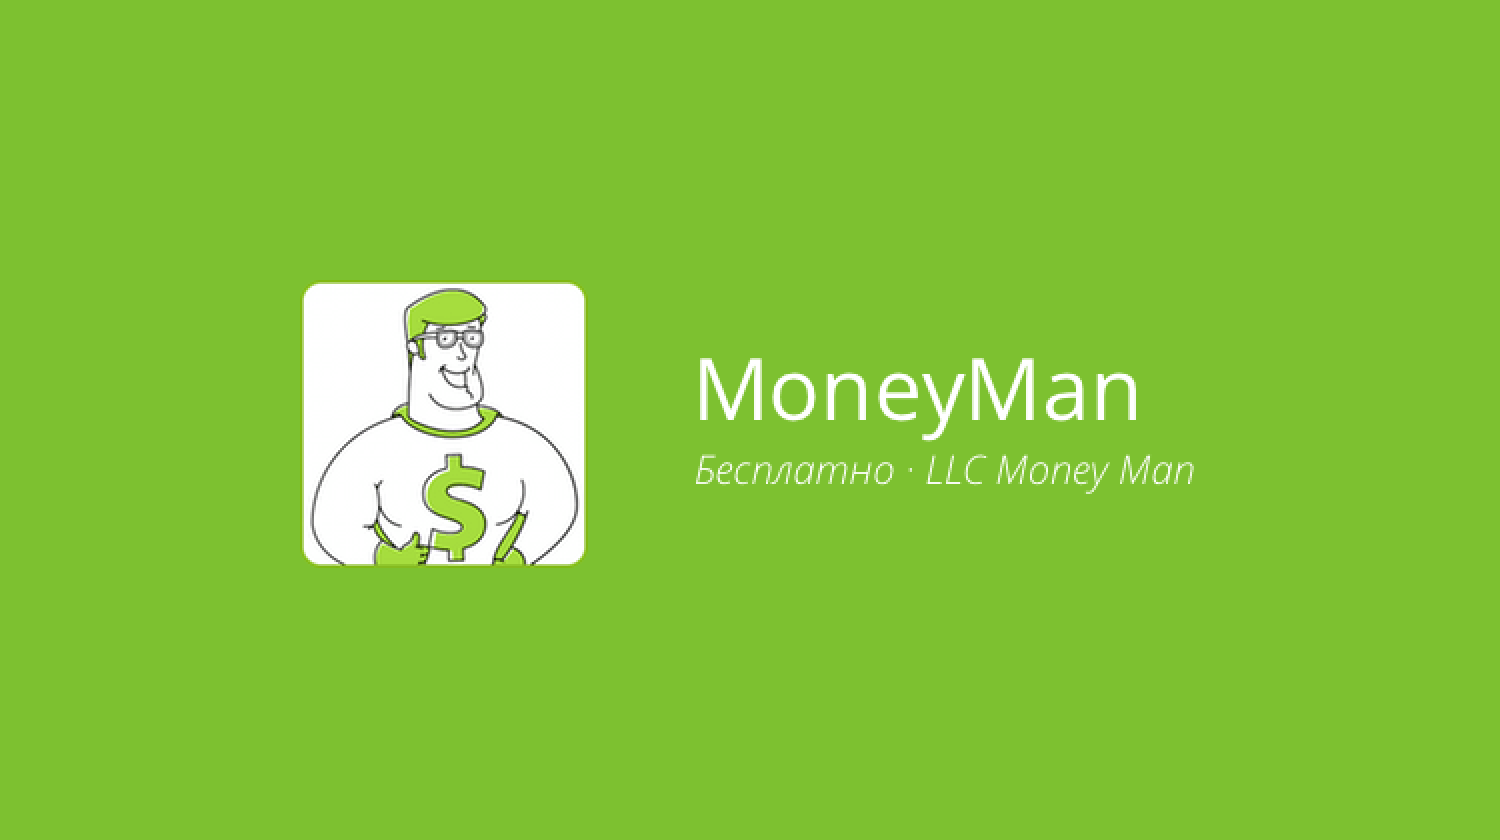 Moneymonk